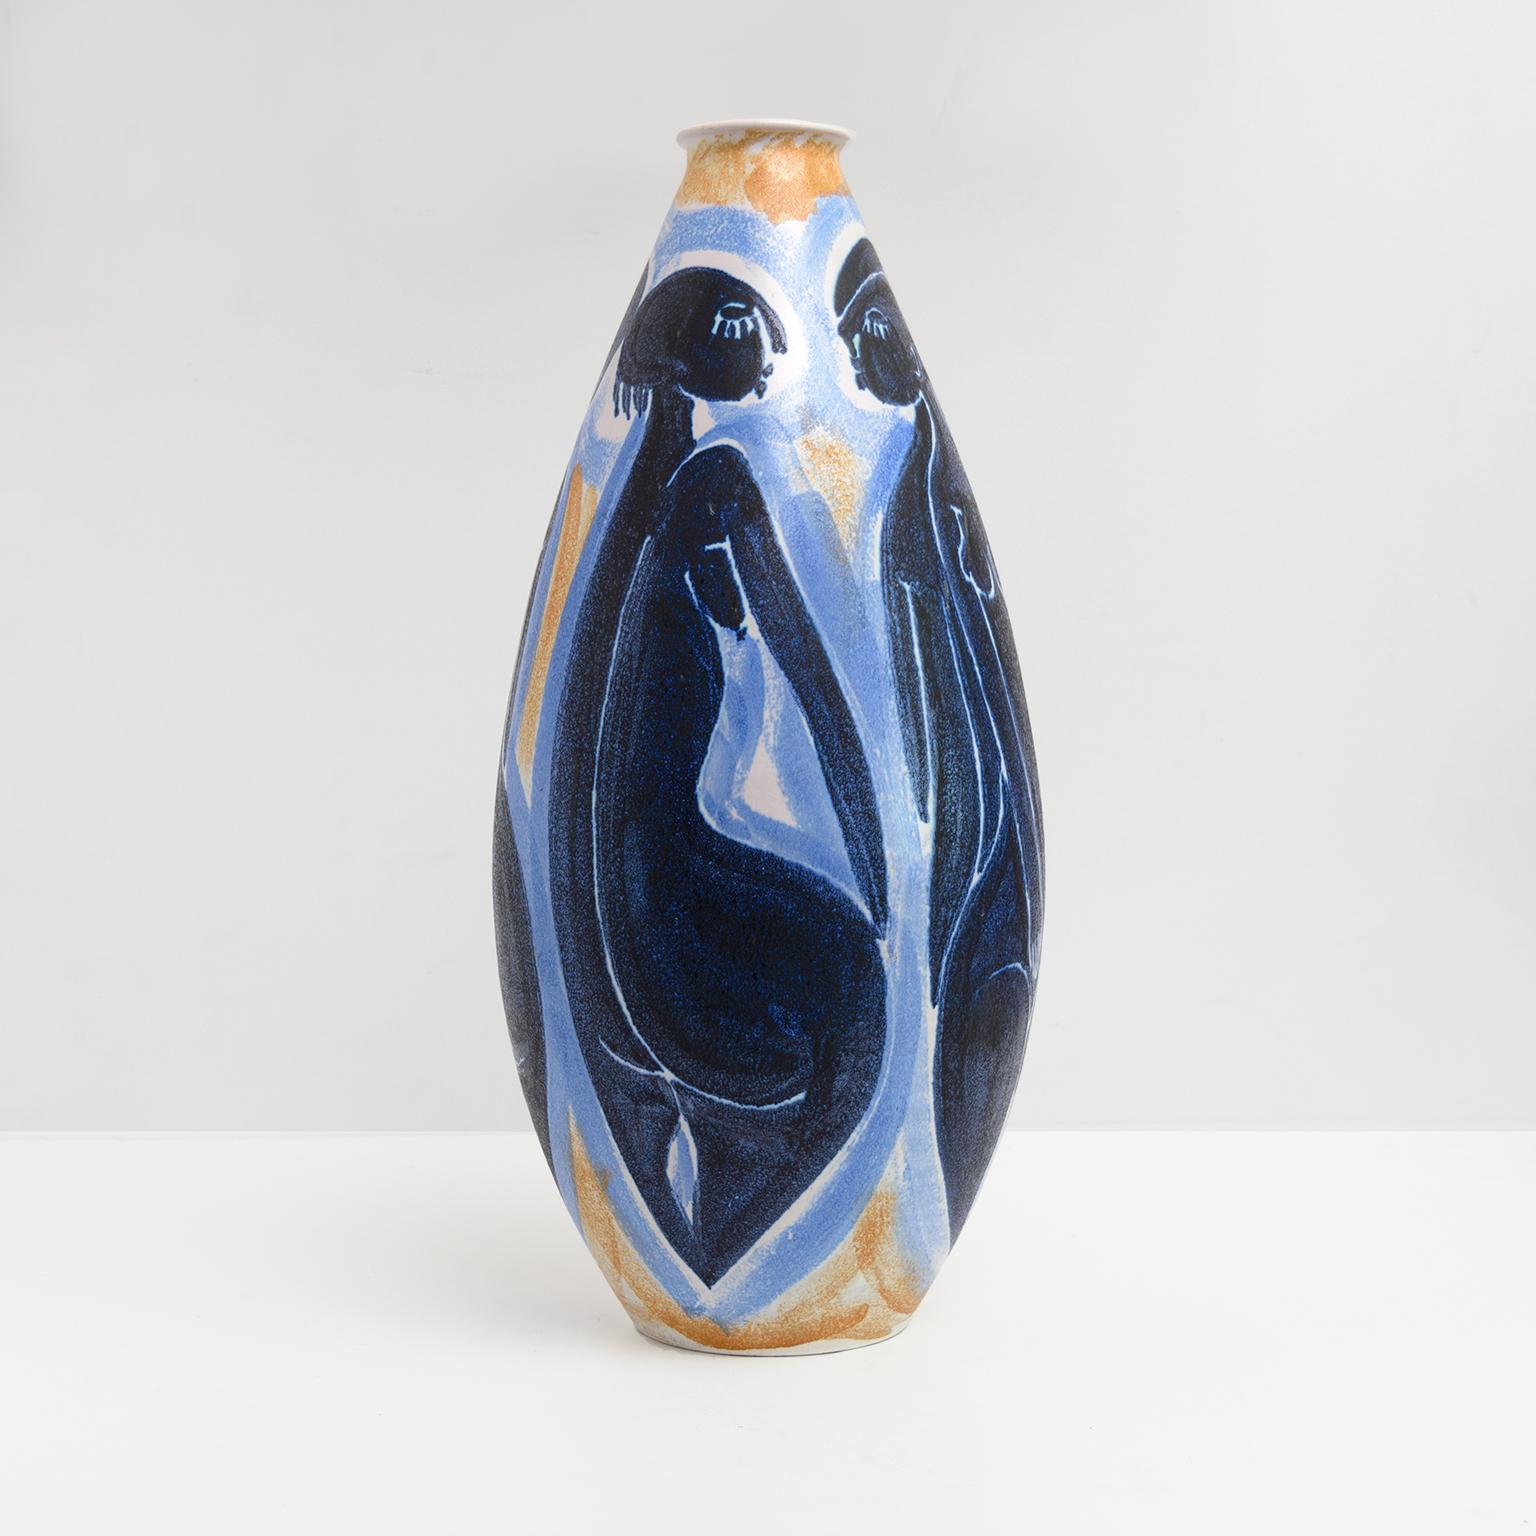 Große Vase aus moderner skandinavischer Keramik, handdekoriert von der Künstlerin Mette Doller. Die Mette Doller und die Form wurden von Ivar Ericsson für Hoganas, Schweden, entworfen.

Höhe: 20,5